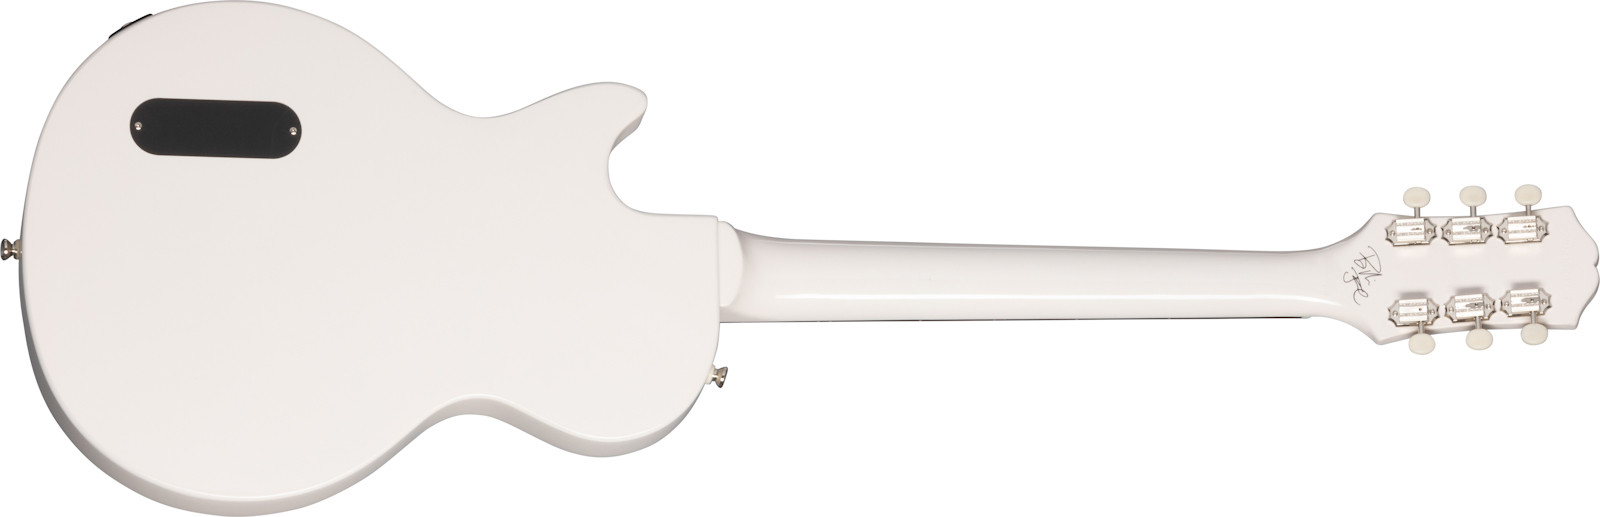 Epiphone Billie Joe Armstrong Les Paul Junior Signature S P90 Ht Lau - Classic White - Guitarra eléctrica de corte único. - Variation 1